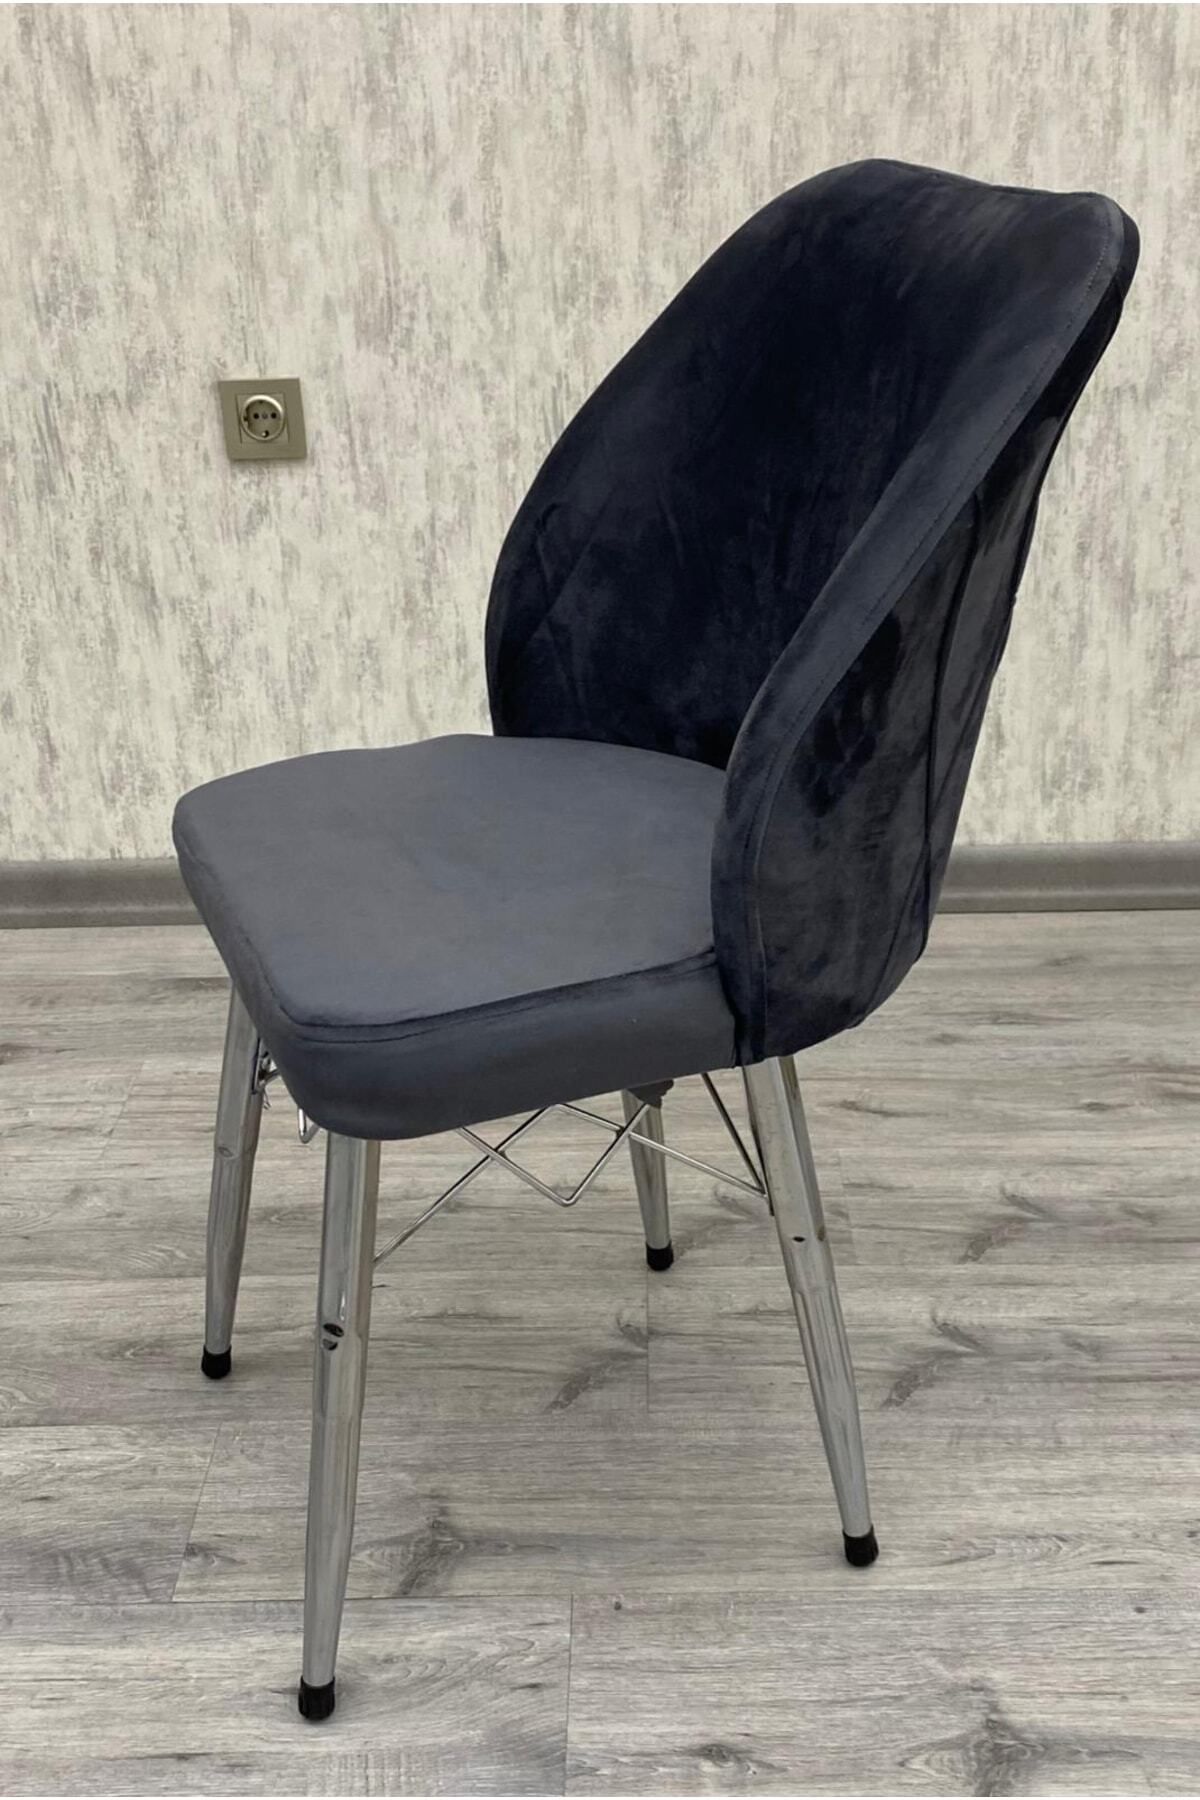 BY ORHAN GÜZEL Mutfak Sandalyesi Yemek Odası Sandalyesi Salon Salon Sandalyesi Orma Sandalye